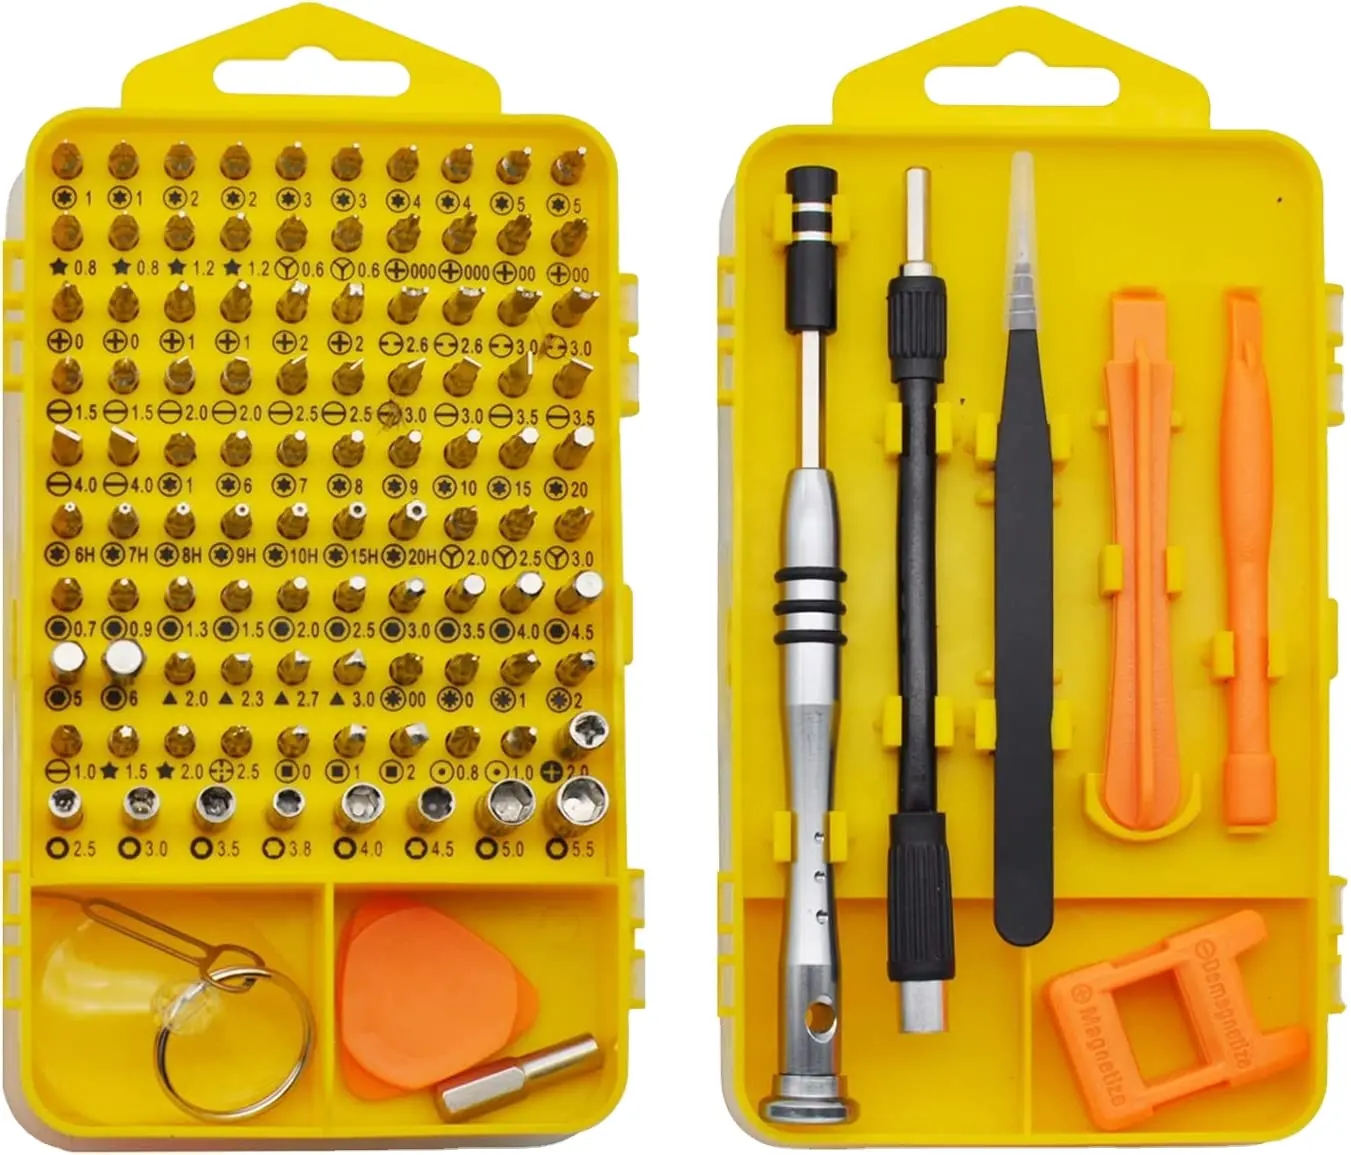 Conjunto de chave de fenda de precisão, kit de ferramentas magnético 110 em 1, mini chave de fenda, kit de reparo perfeito para celular, tablet, pc, relógio